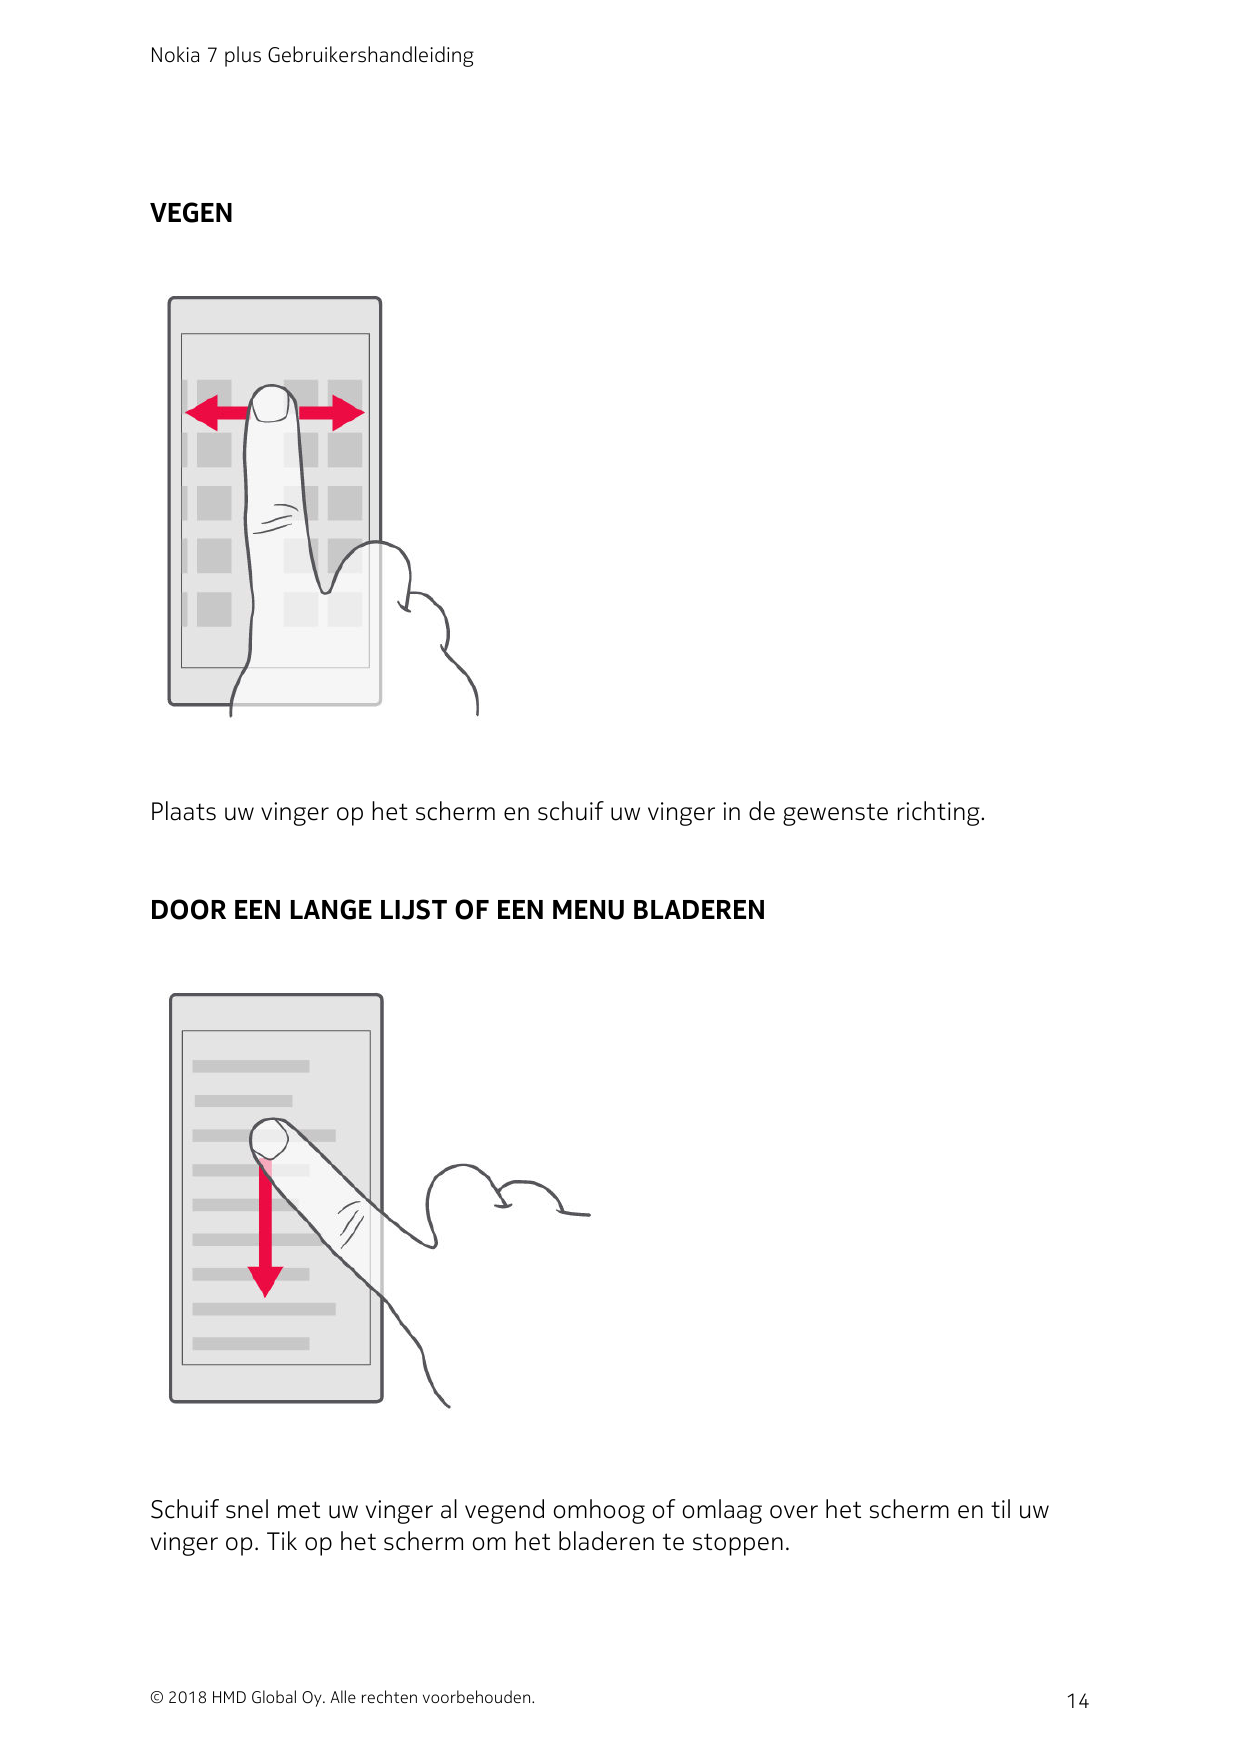 Nokia 7 plus GebruikershandleidingVEGENPlaats uw vinger op het scherm en schuif uw vinger in de gewenste richting.DOOR EEN LANGE